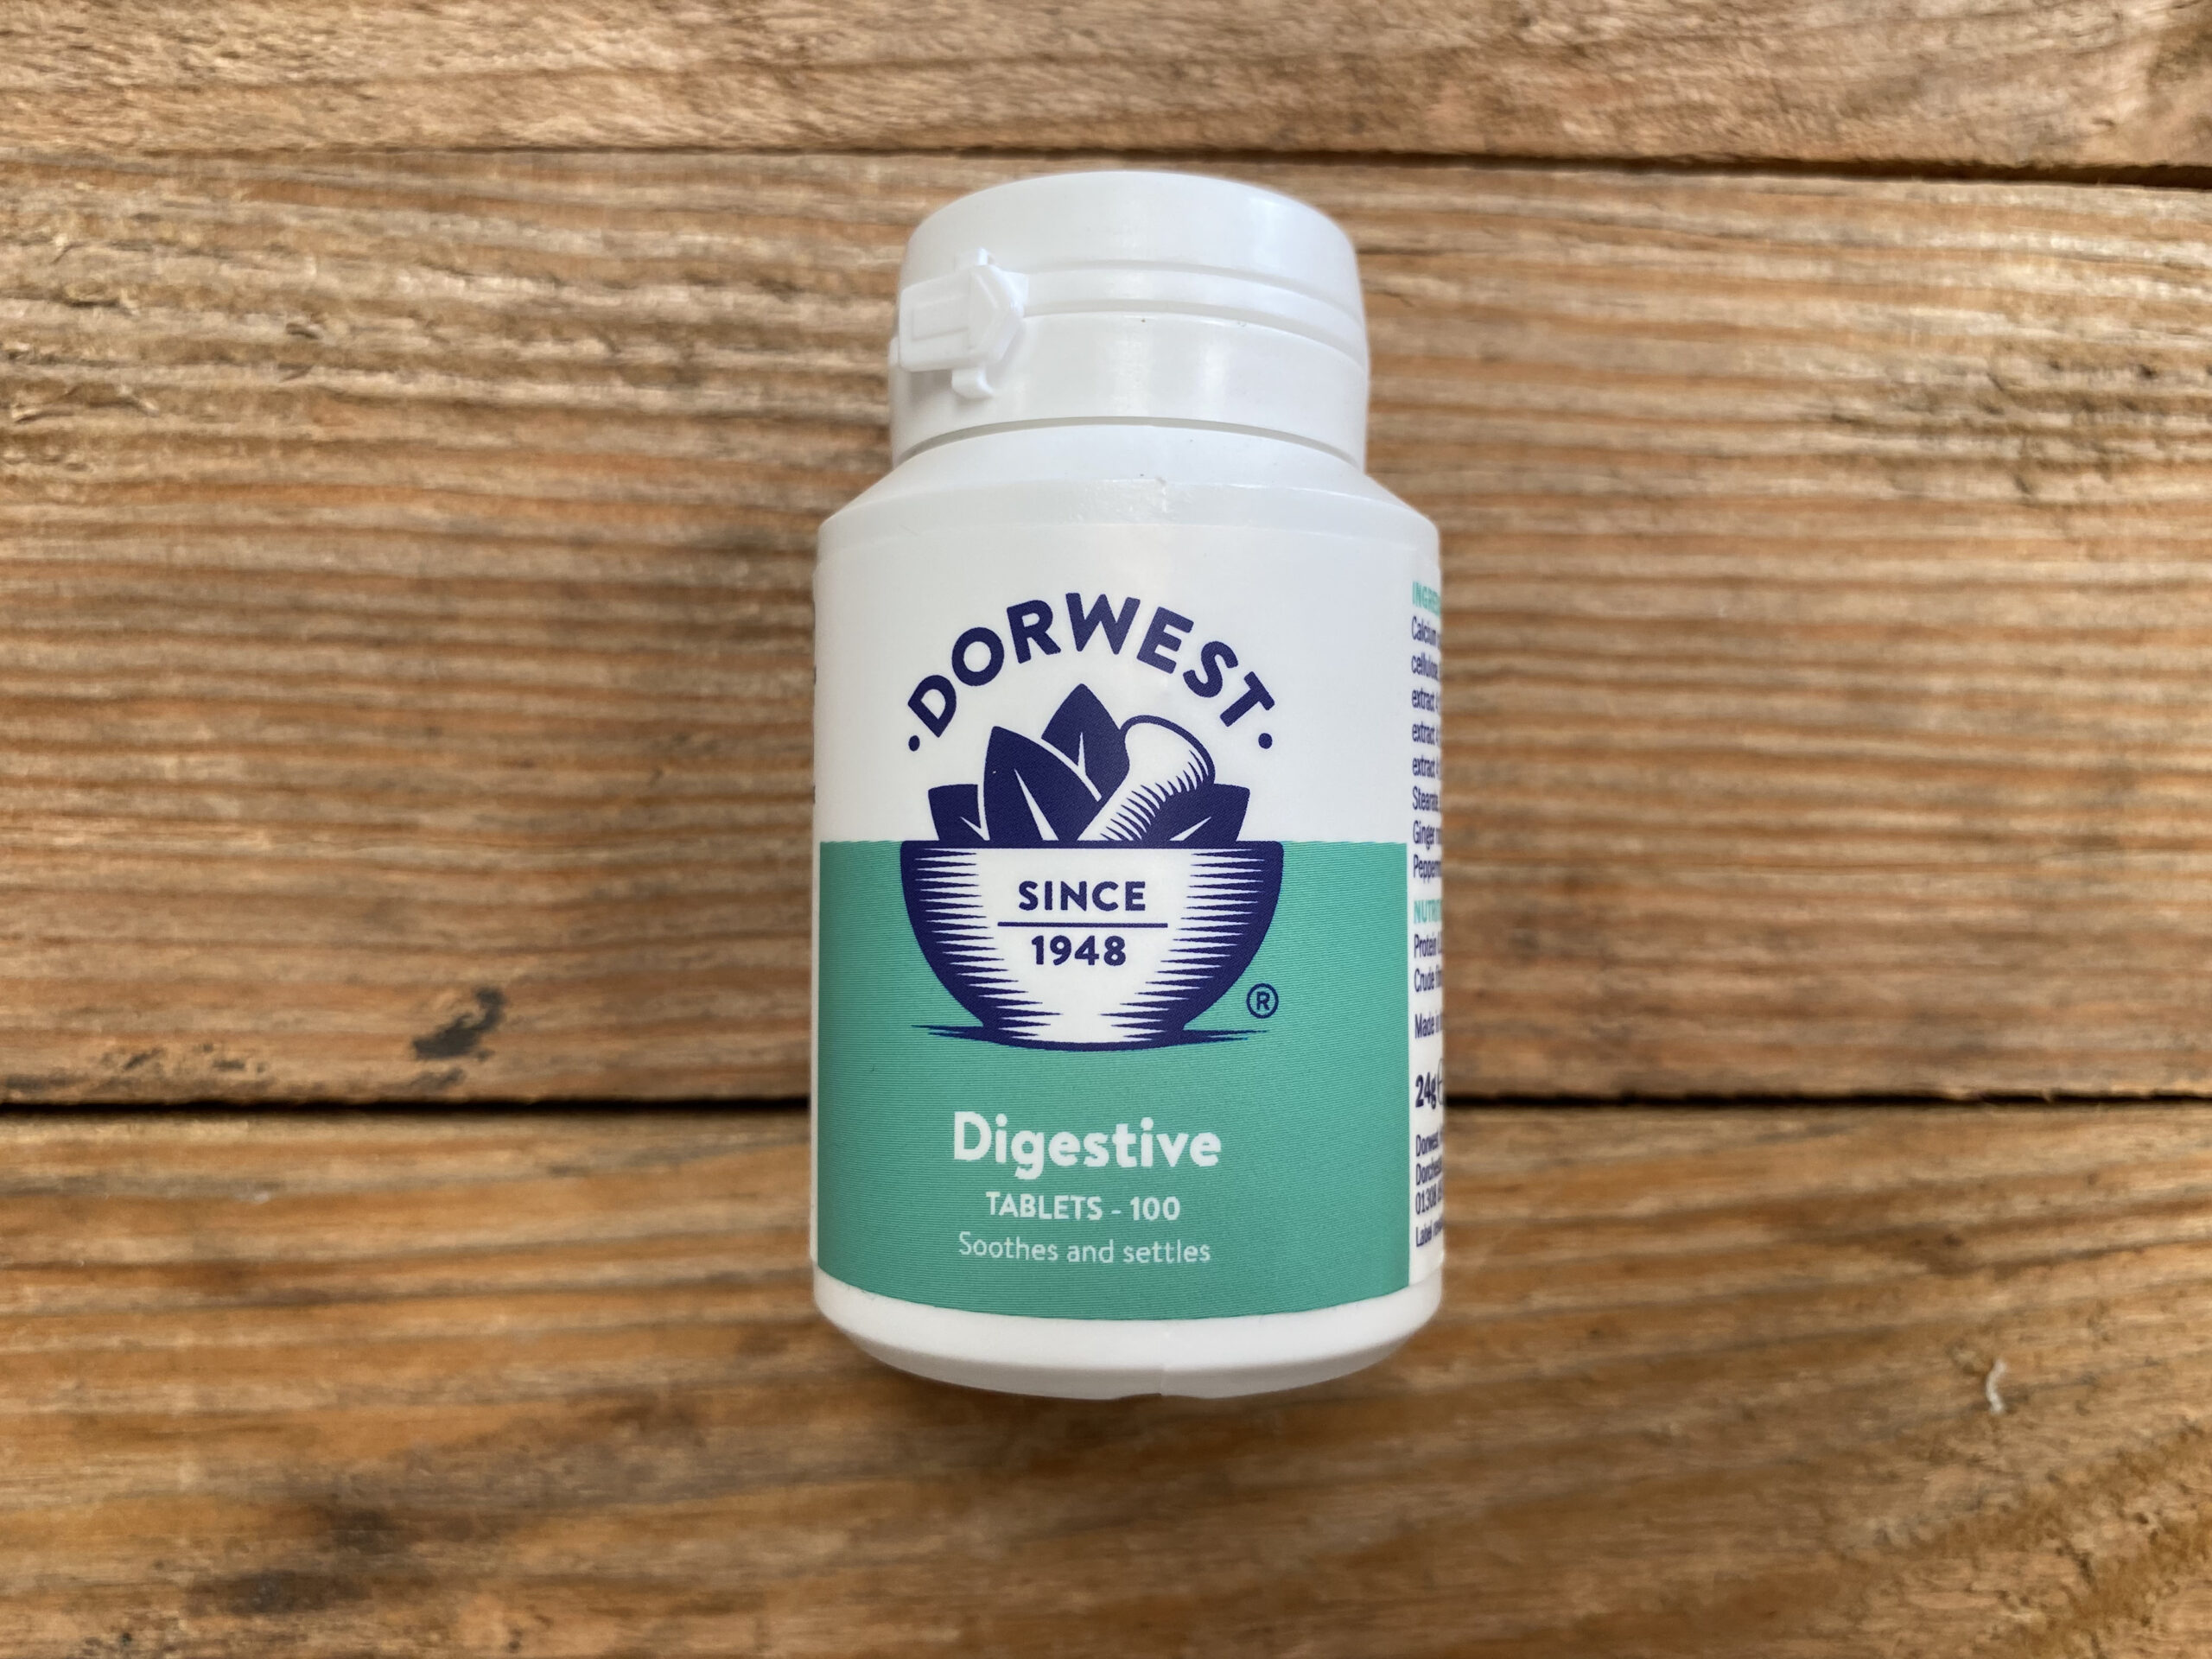 Dorwest Digestive Tablets – 100